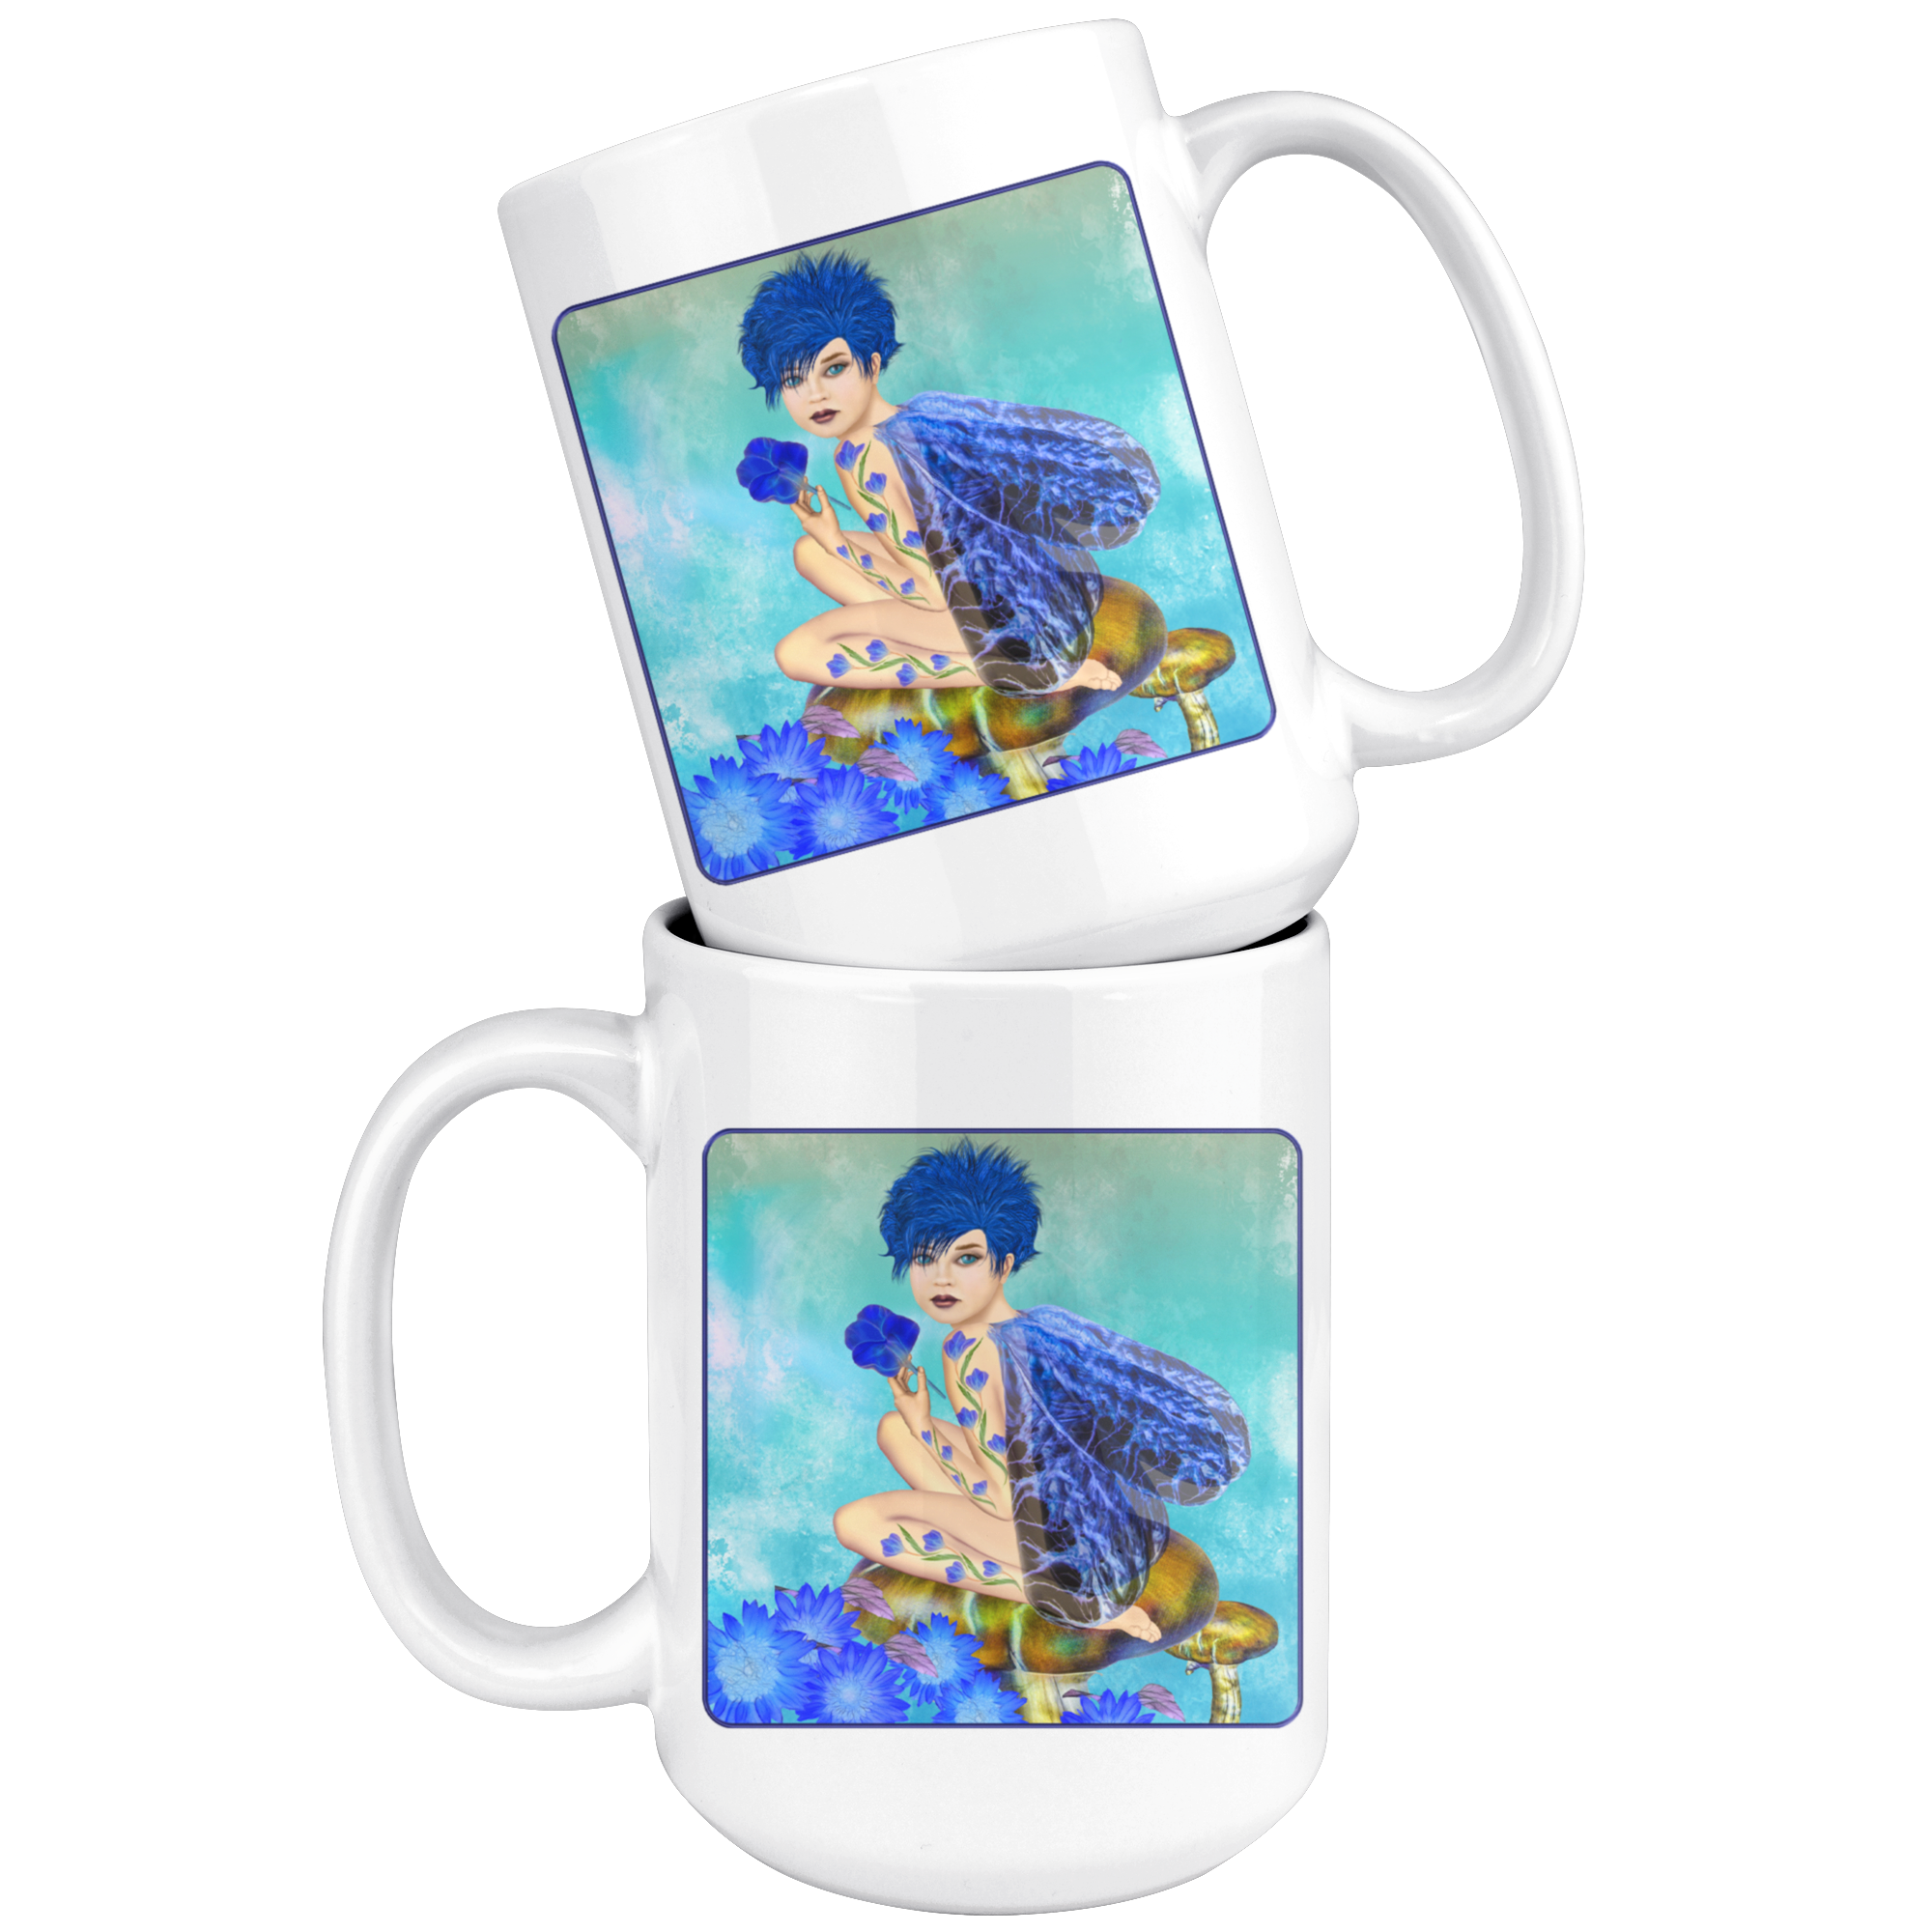 Blue Fairy - 15 oz mug